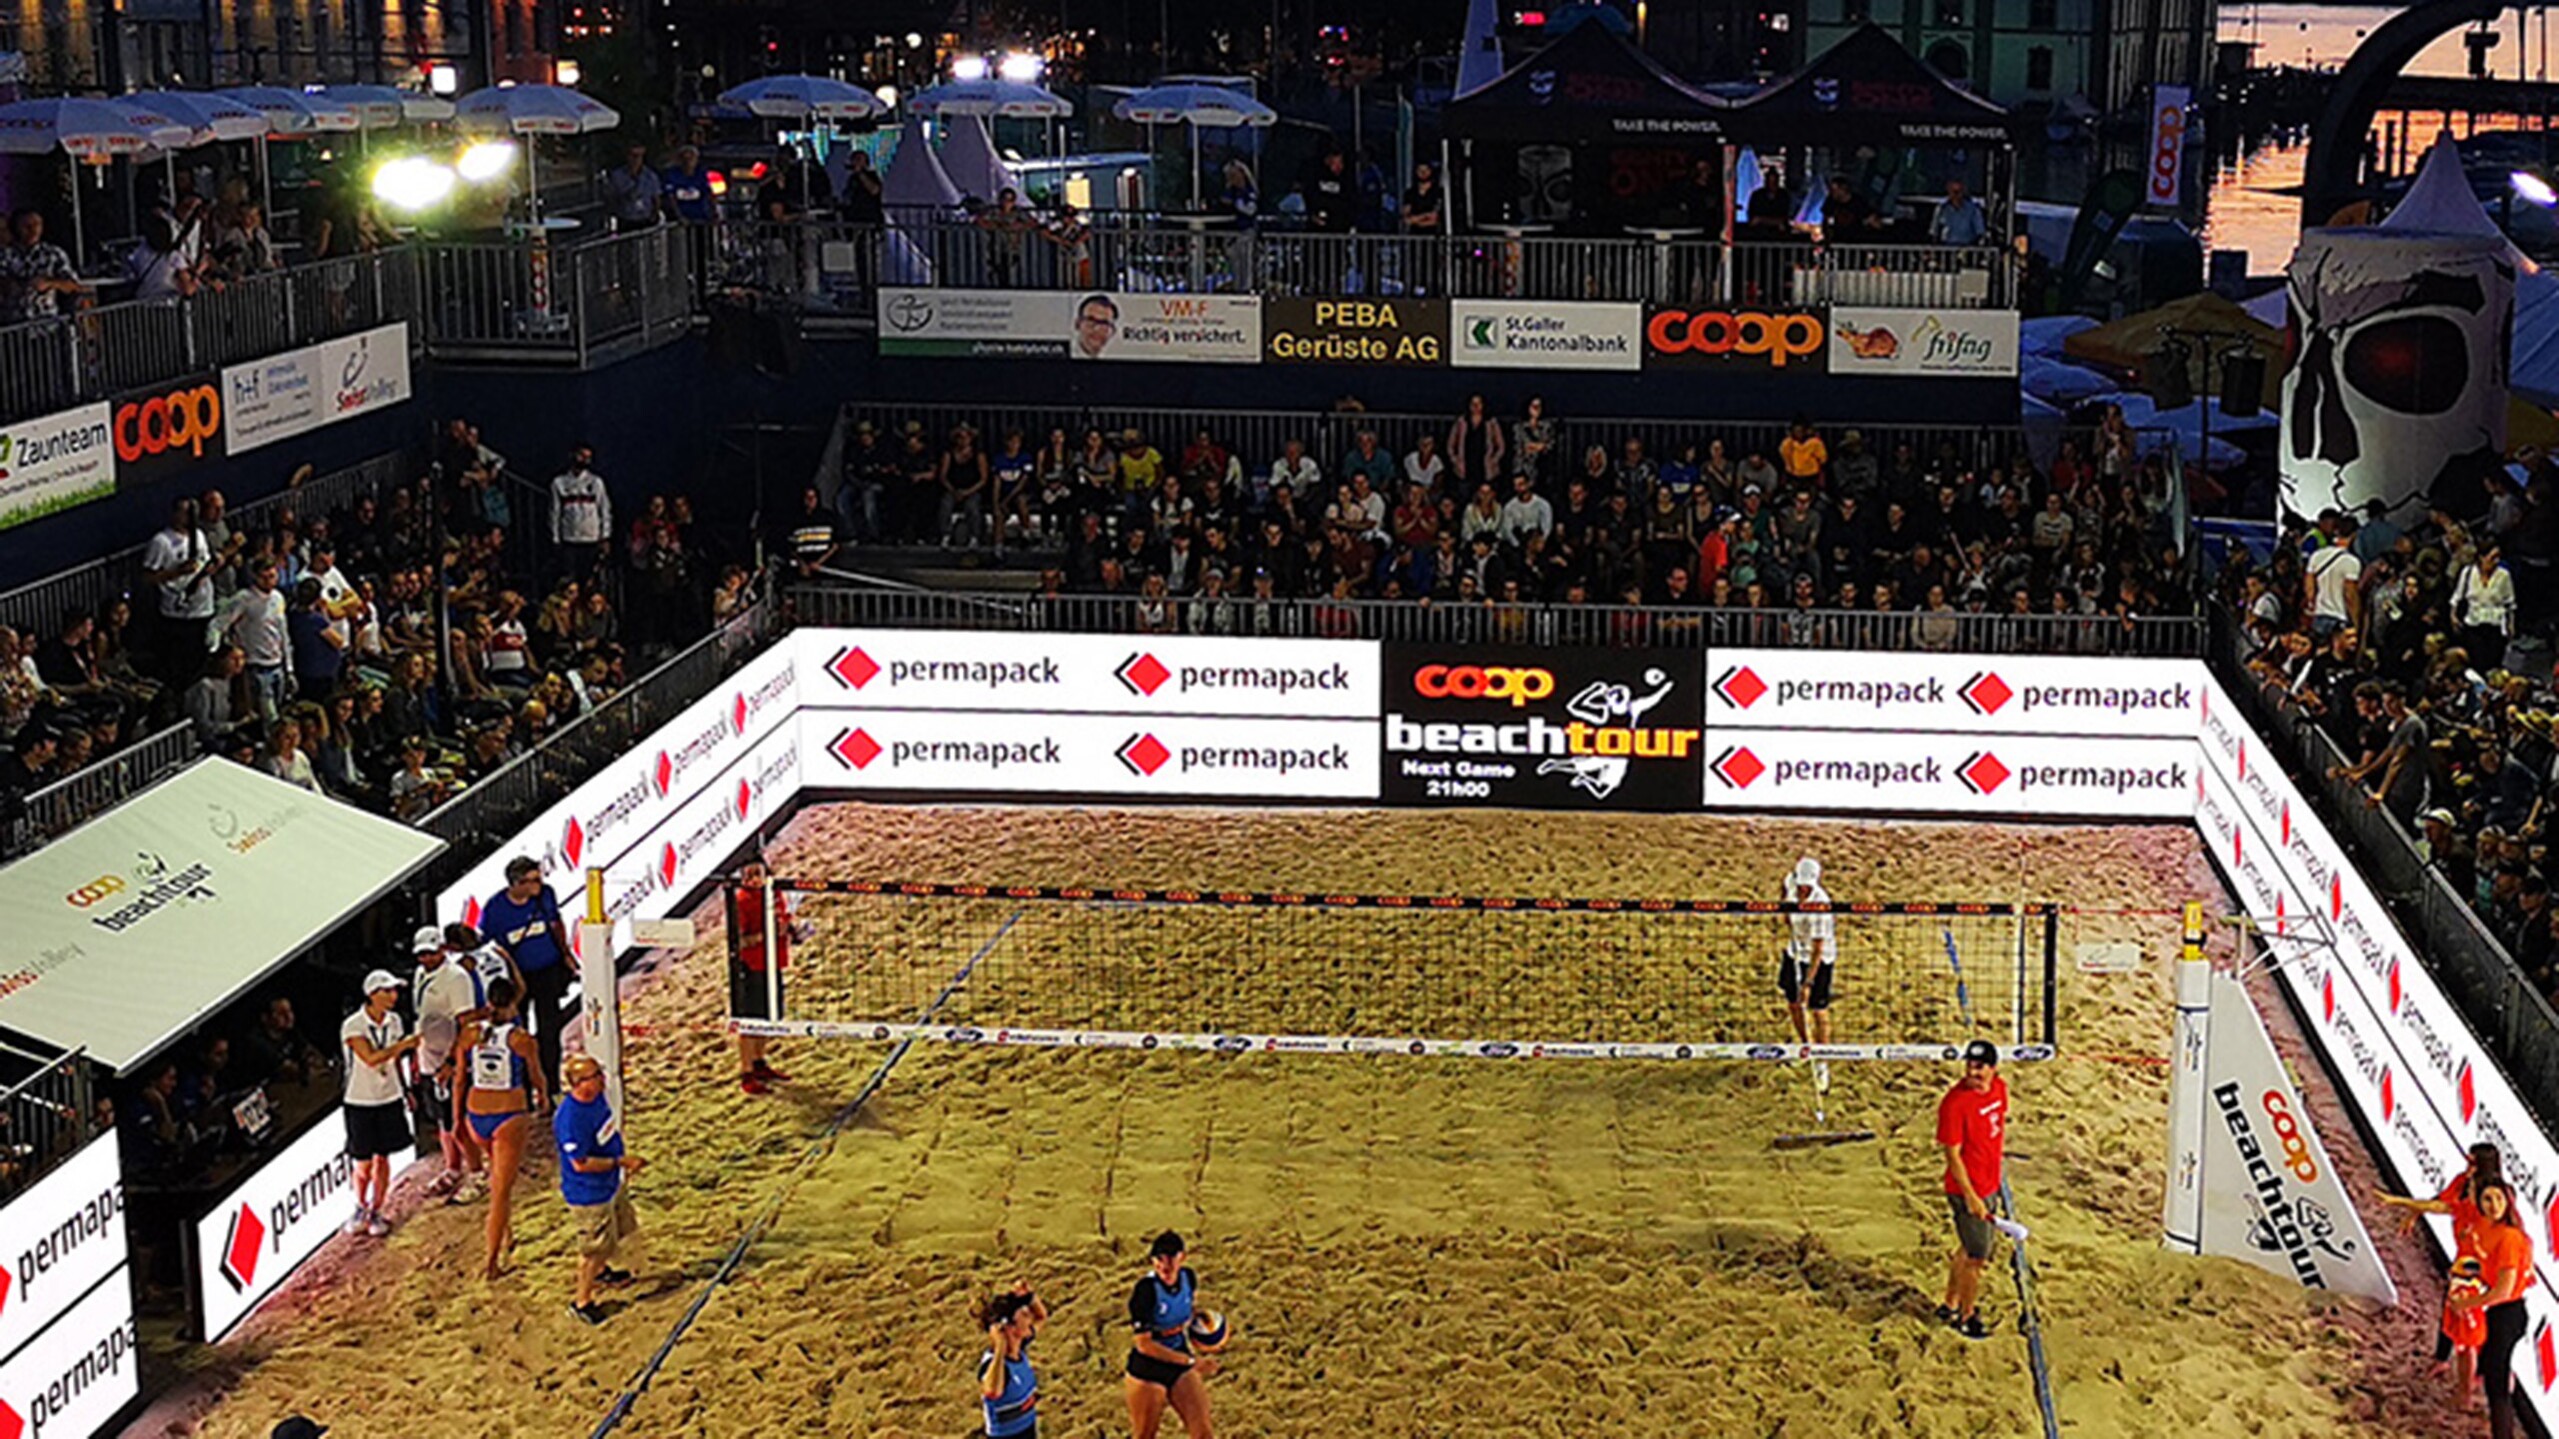 Beach Volley Ball-Spieler mit Tribüne und Permapack-Werbung im Hintergrund